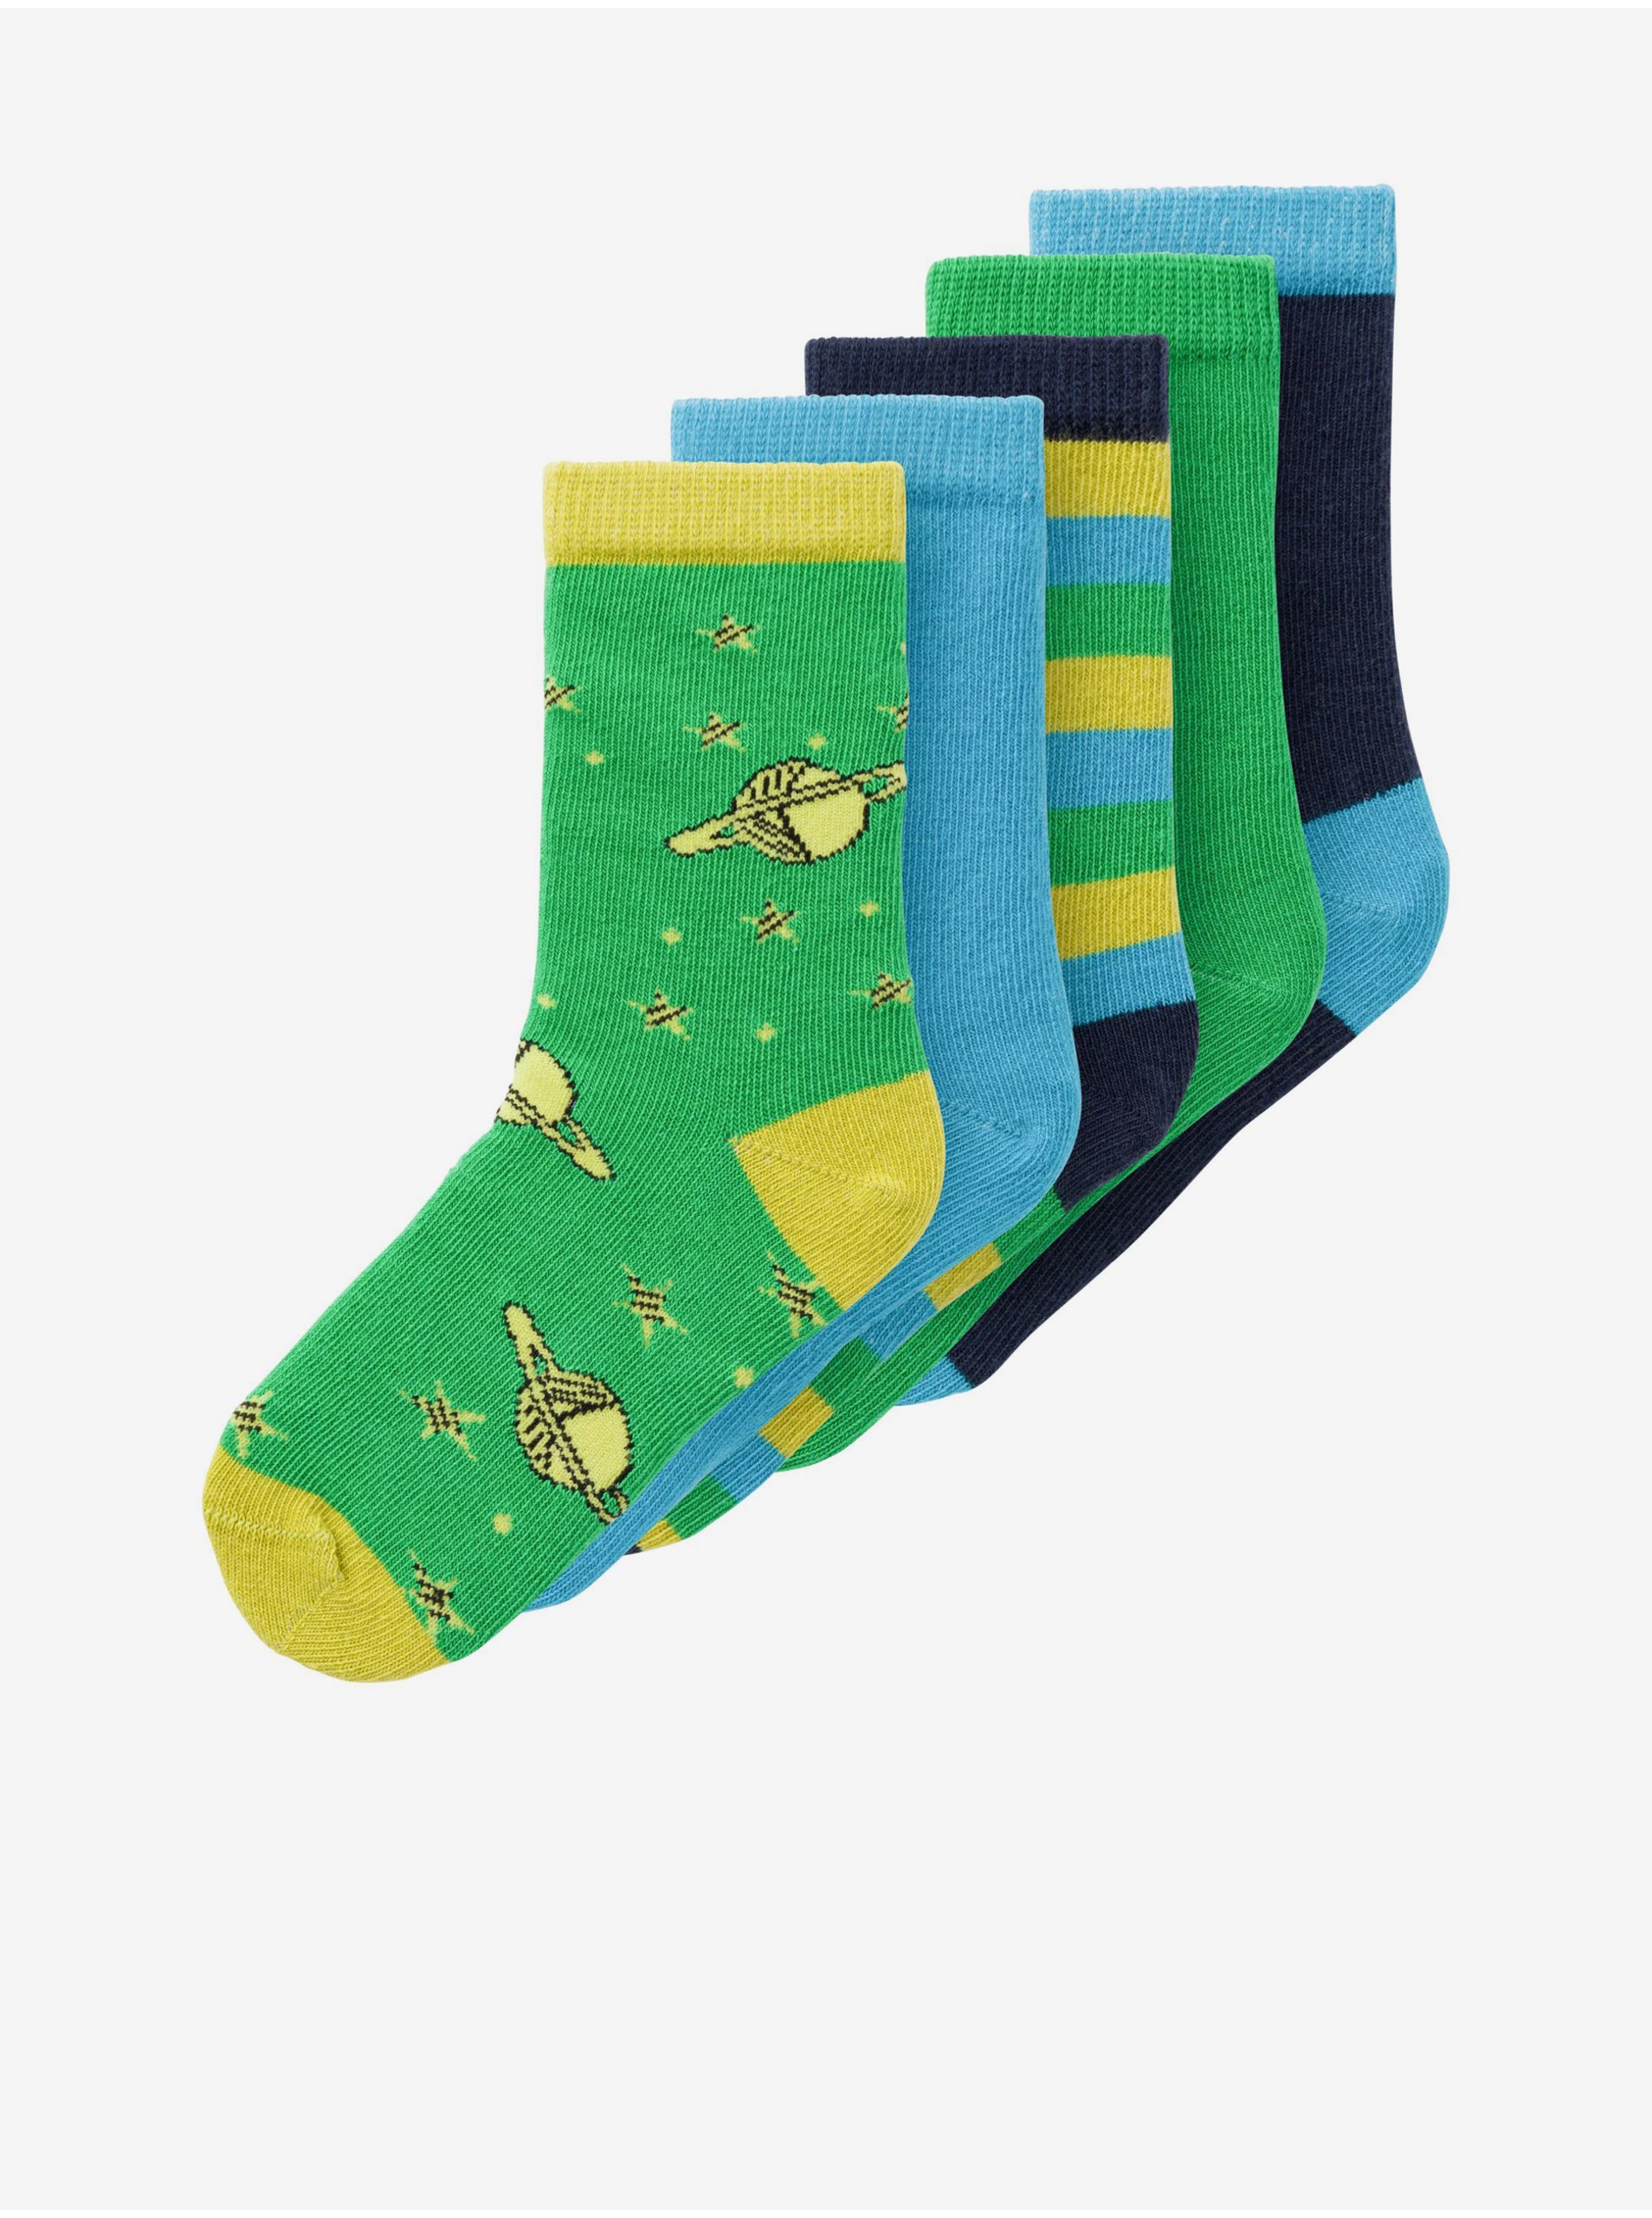 E-shop Sada pěti párů dětských ponožek v modré a zelené barvě name it Vagn